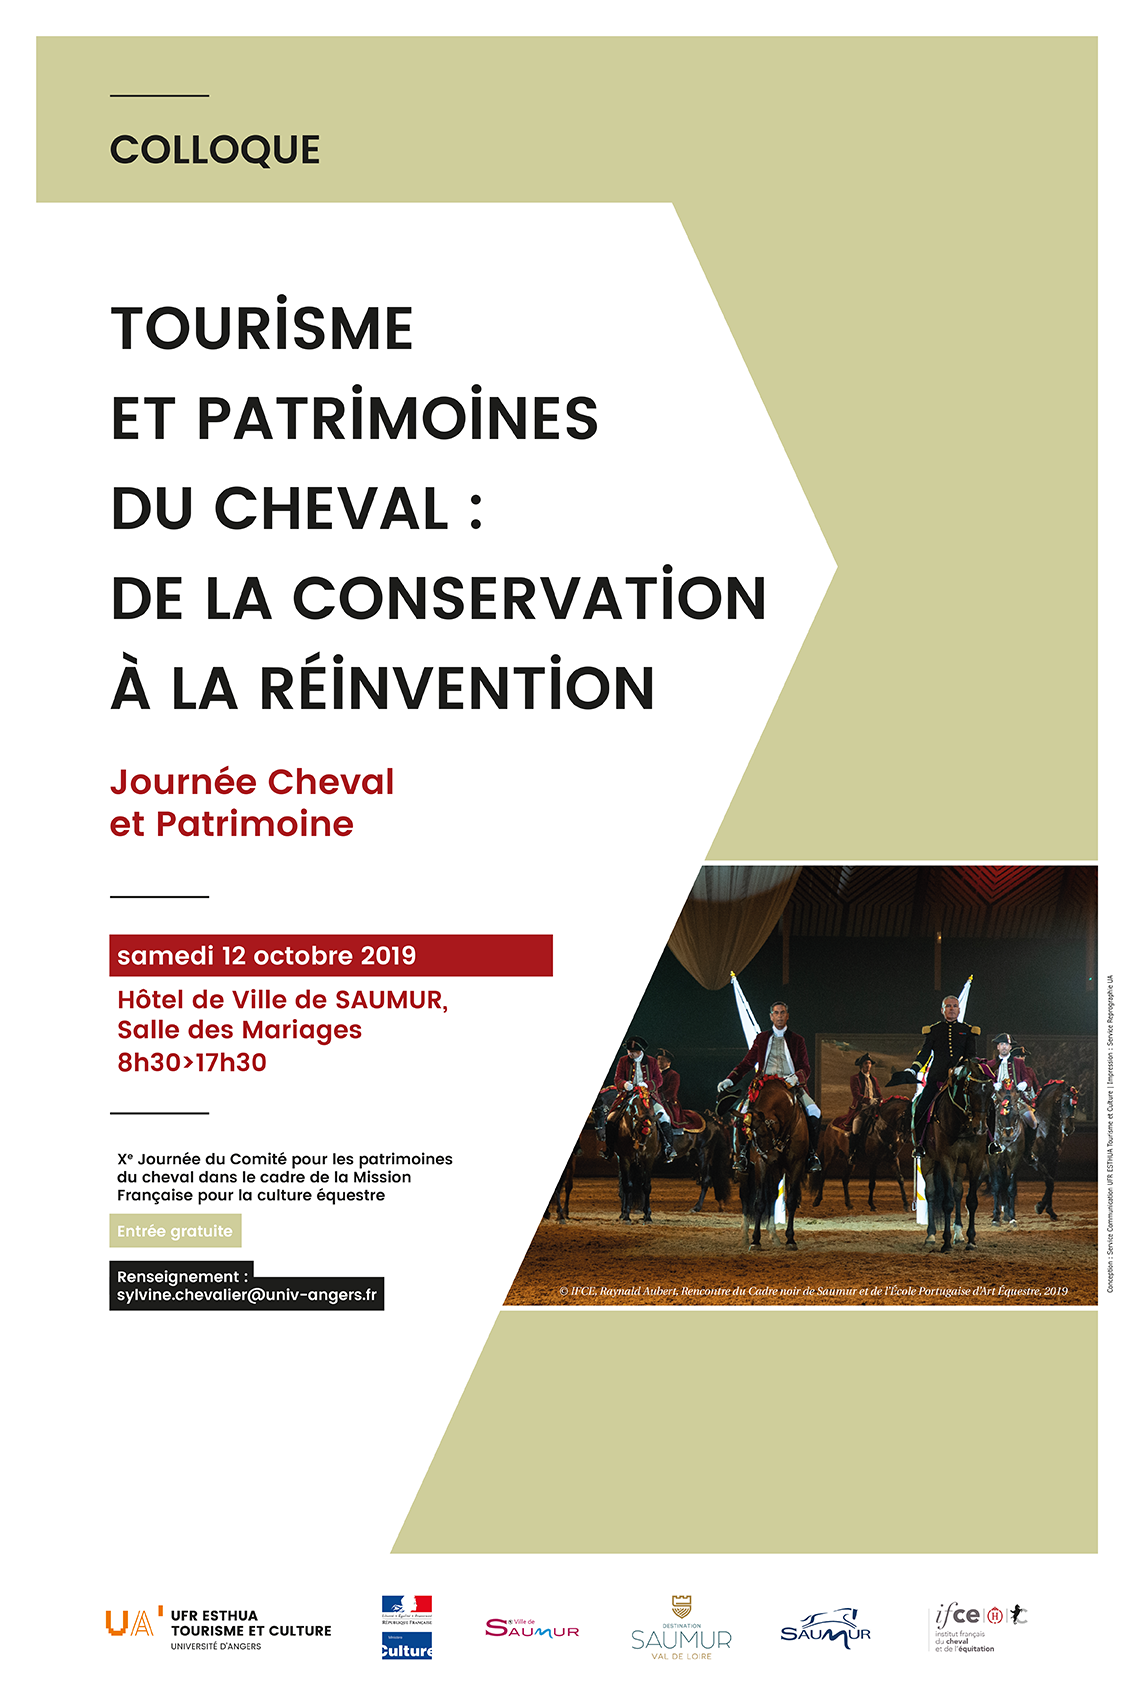 Saumur. Un colloque autour du tourisme équestre le samedi 12 octobre